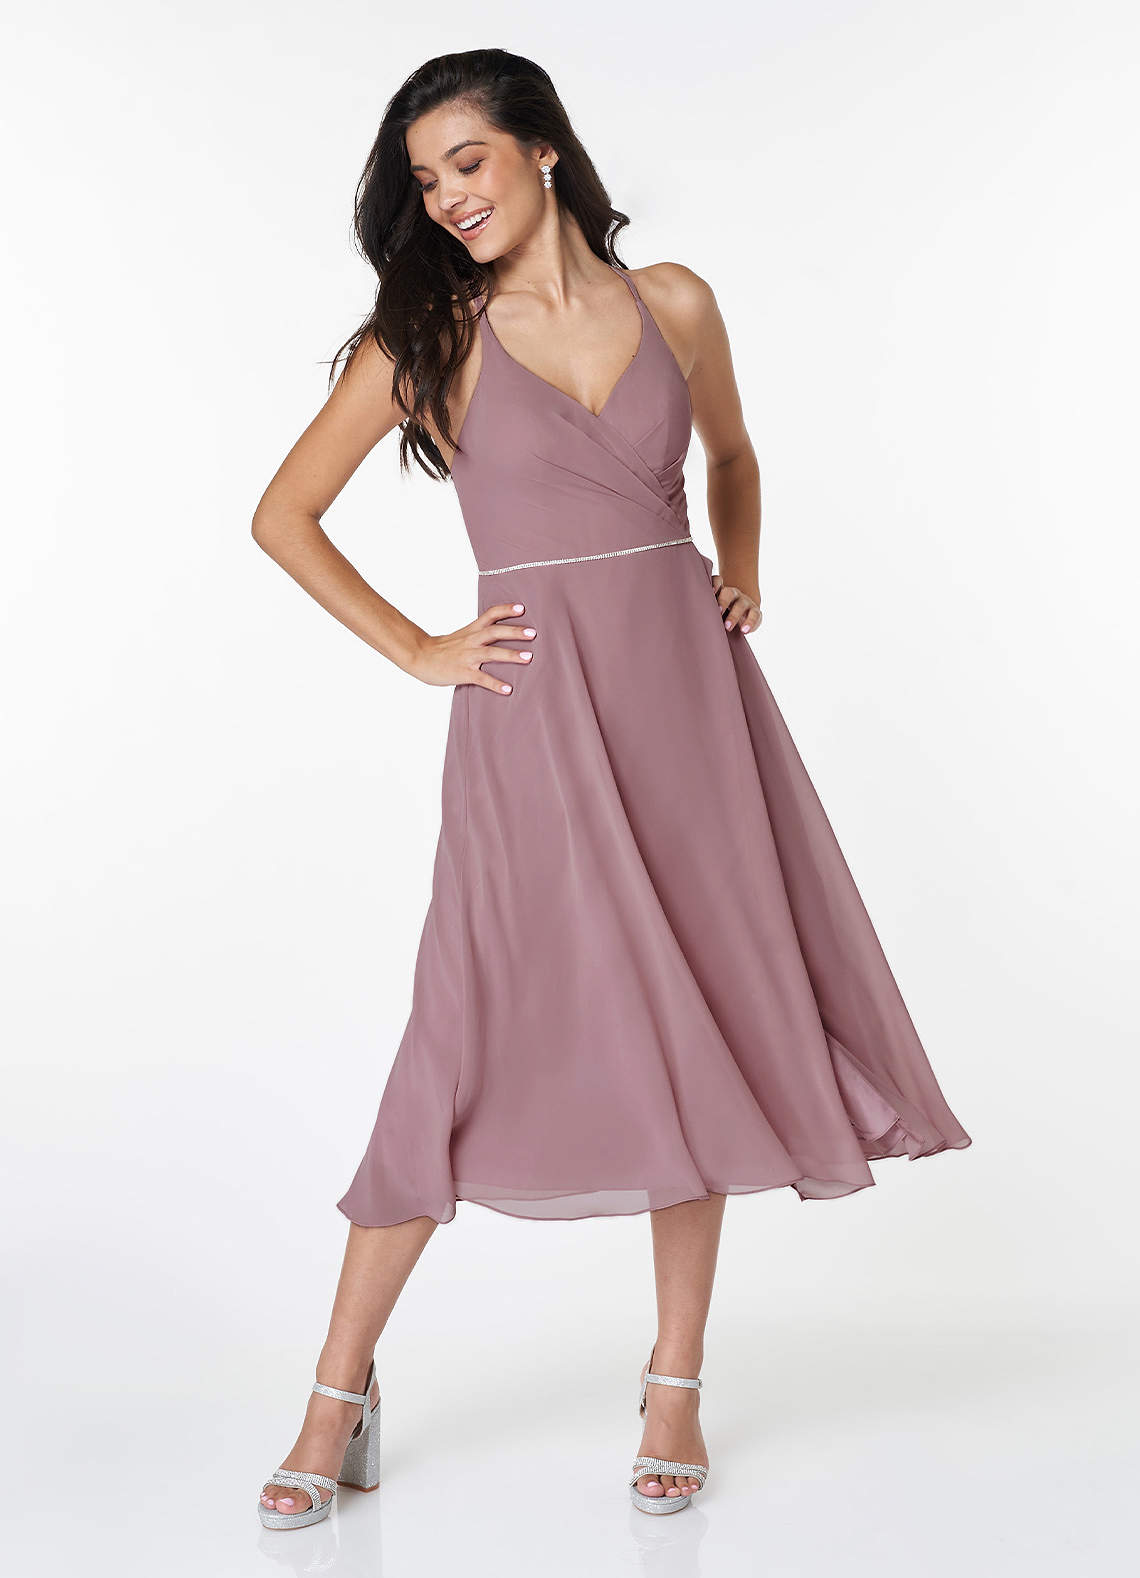 Arcadia Rouge Pink Sleeveless Midi Dress image1